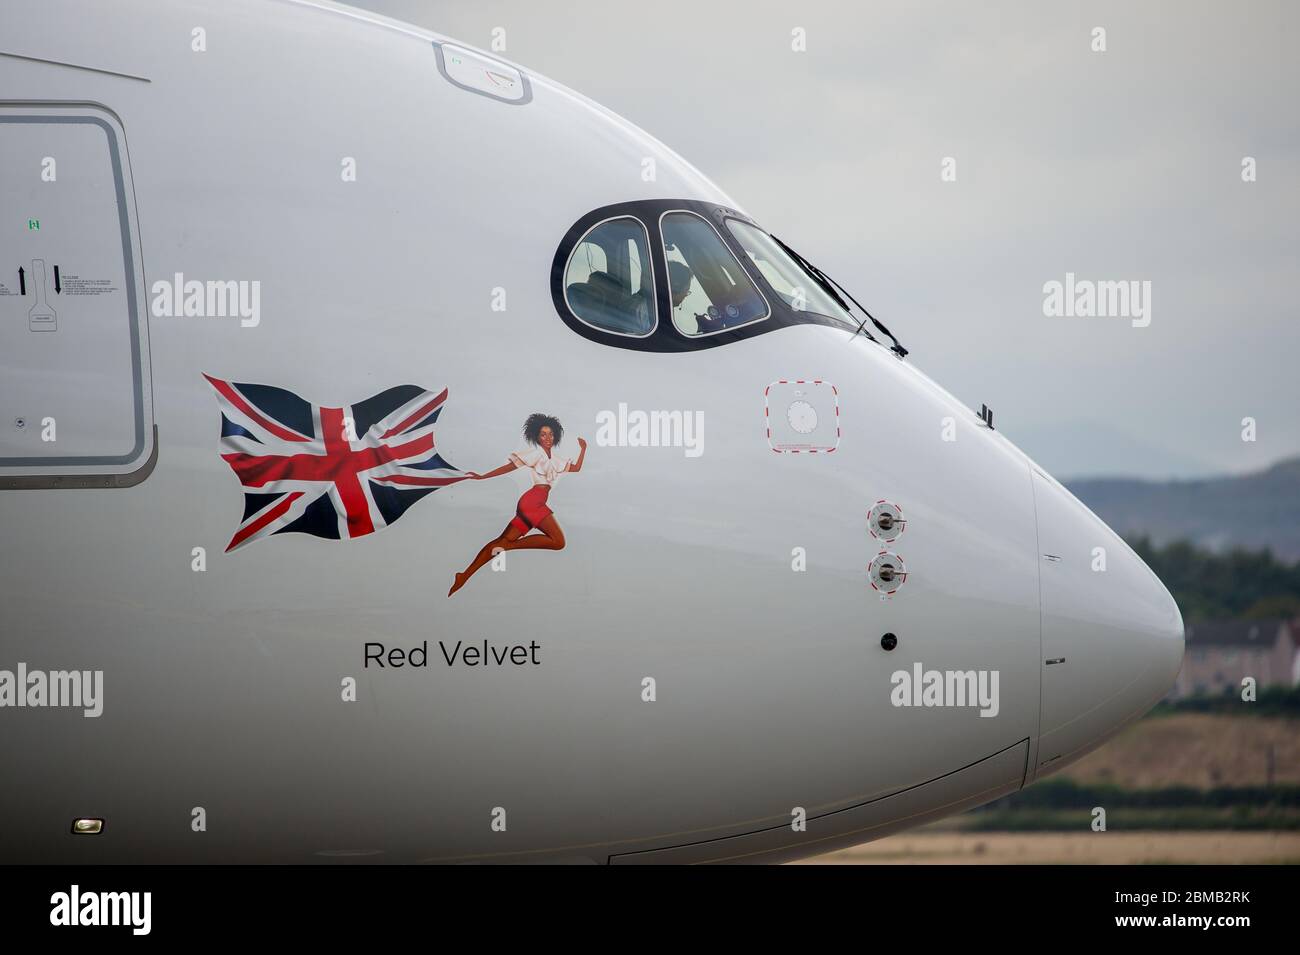 Glasgow, Regno Unito. 25 agosto 2019. Nella foto: Velivolo Virgin Atlantic Airbus A350-1000 visto all'aeroporto internazionale di Glasgow per l'addestramento dei piloti. Il nuovissimo jumbo jet di Virgin vanta un nuovo e sorprendente spazio sociale "loft" con divani in business class, e adornato in modo appropriato dalla registrazione G-VLUX. L'intero aeromobile avrà anche accesso a Wi-Fi ad alta velocità. Virgin Atlantic ha ordinato un totale di 12 Airbus A350-1000s. Tutti i paesi sono programmati per aderire alla flotta entro il 2021 in un ordine del valore stimato di 4.4 miliardi di dollari (£3.36 miliardi). Credit: Colin Fisher/Alamy Live News. Foto Stock